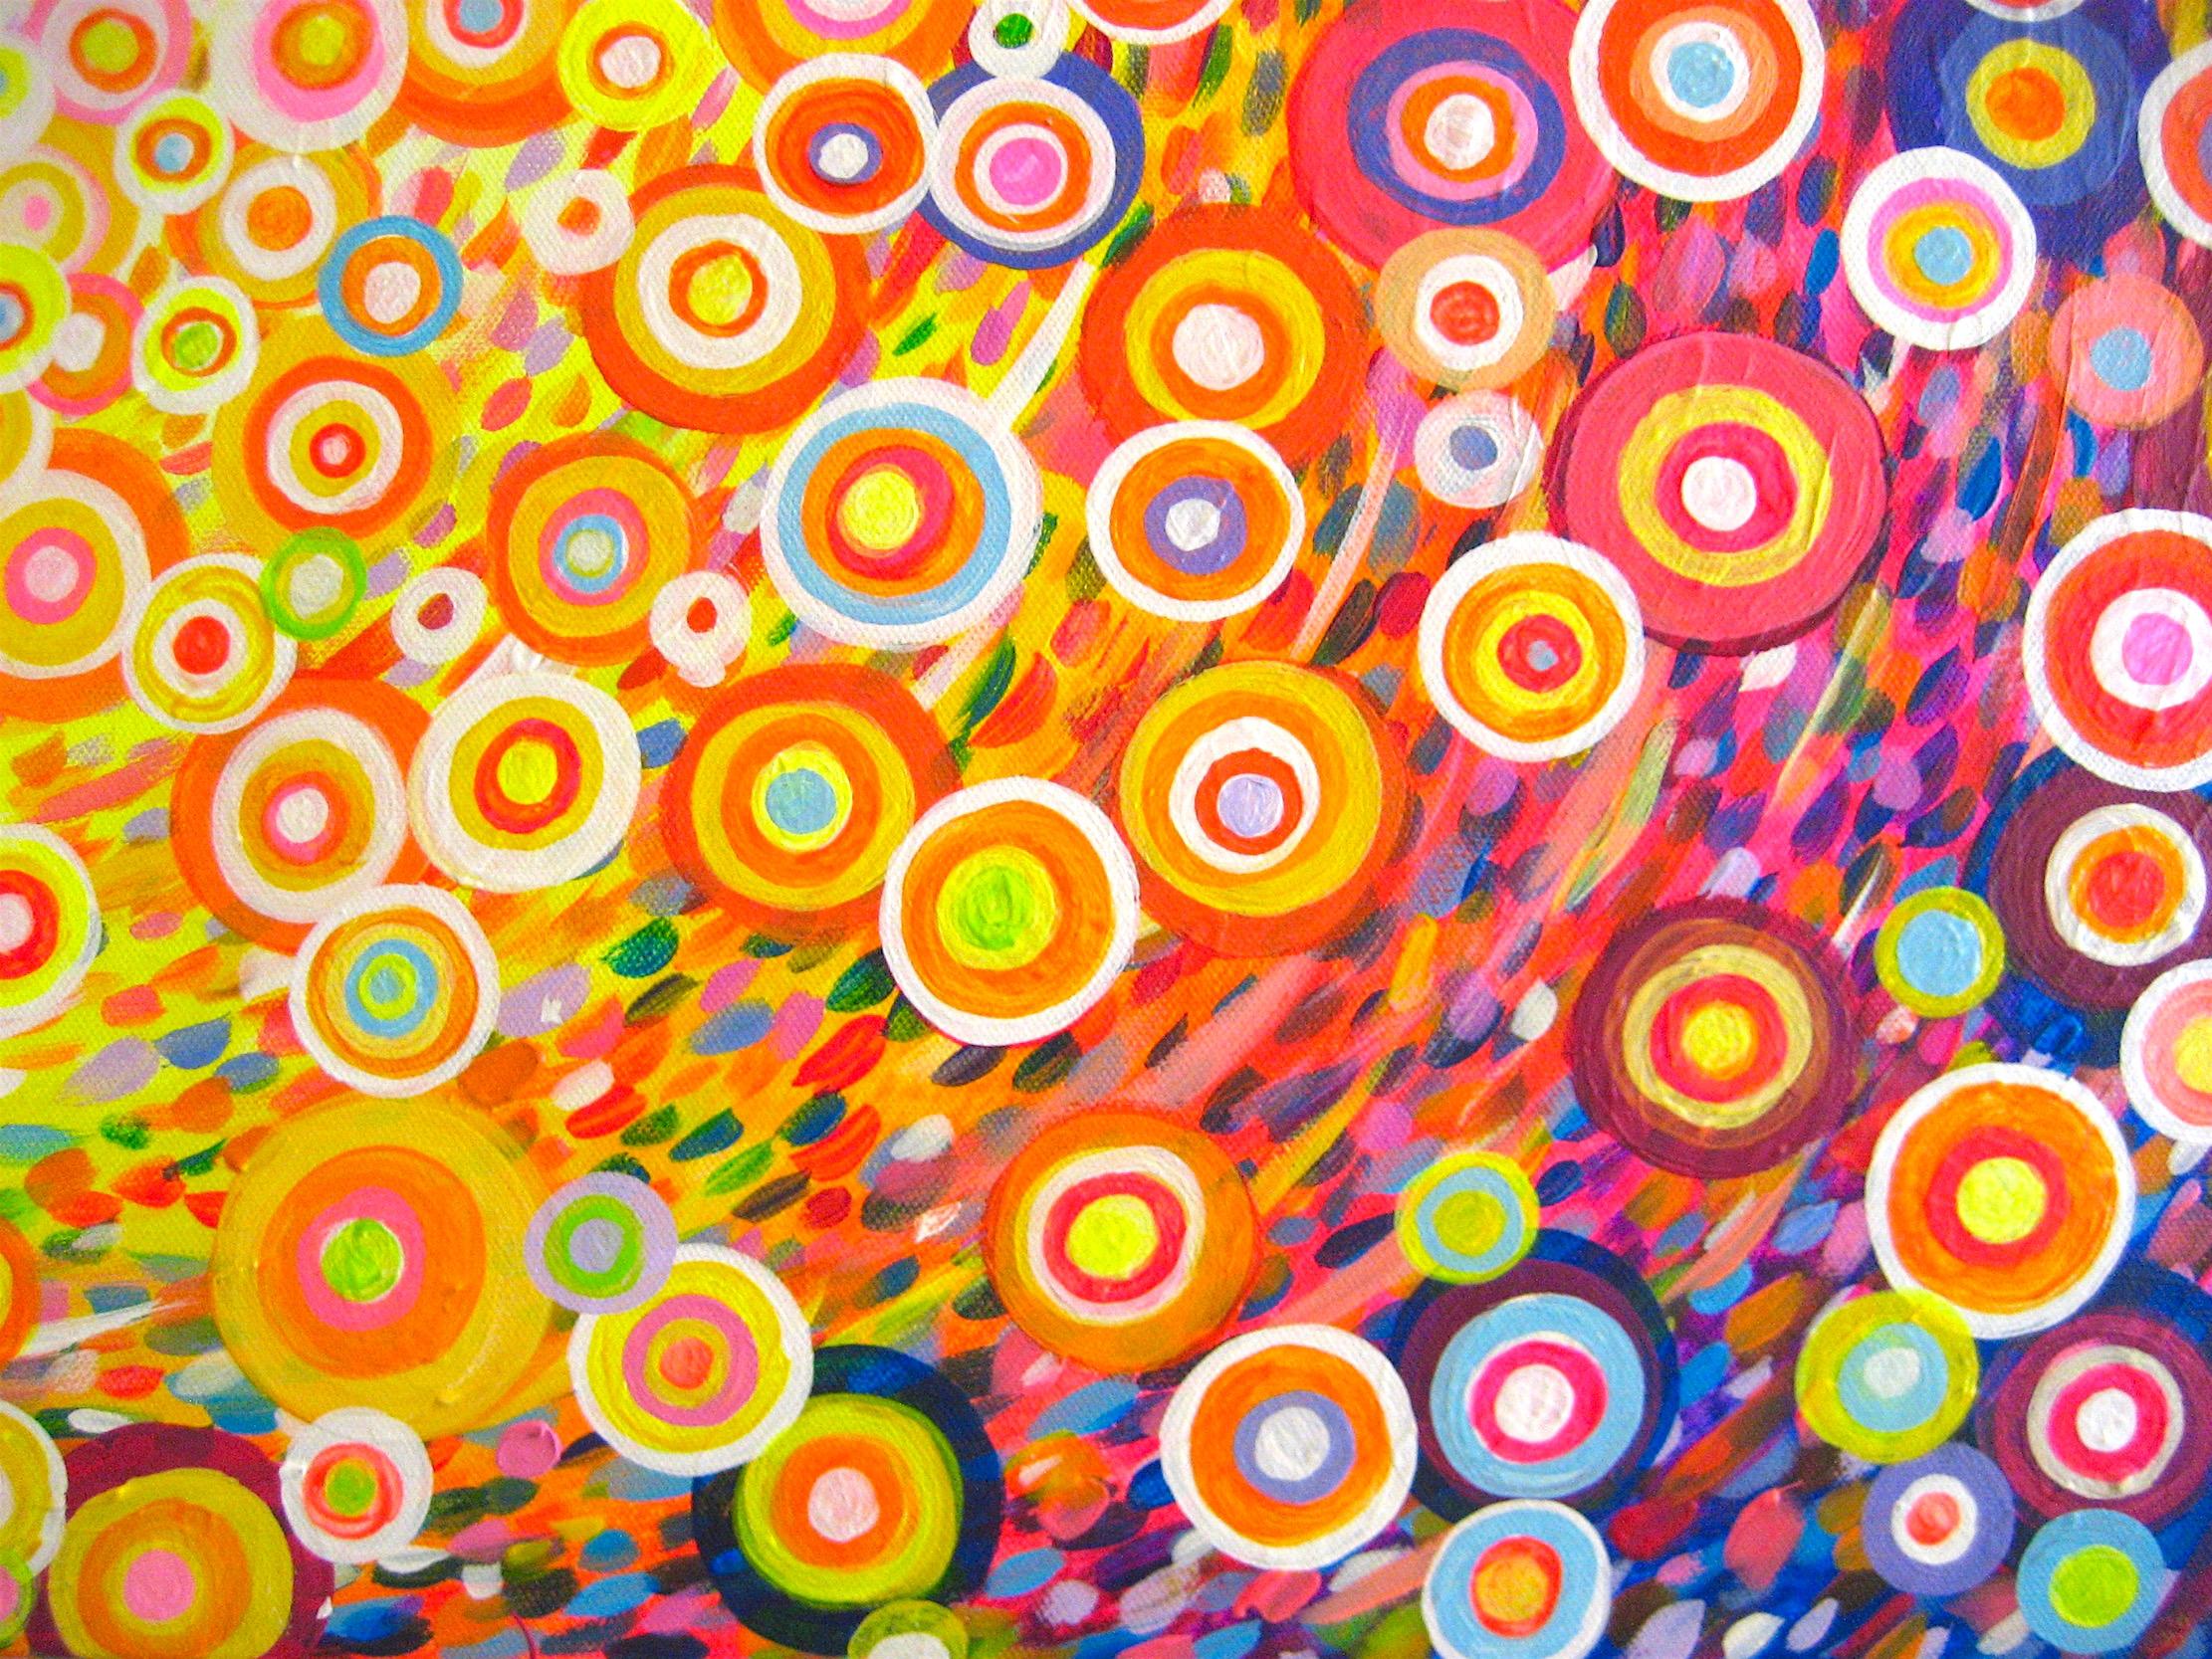 In Circles - Abstract Painting by Natasha Tayles